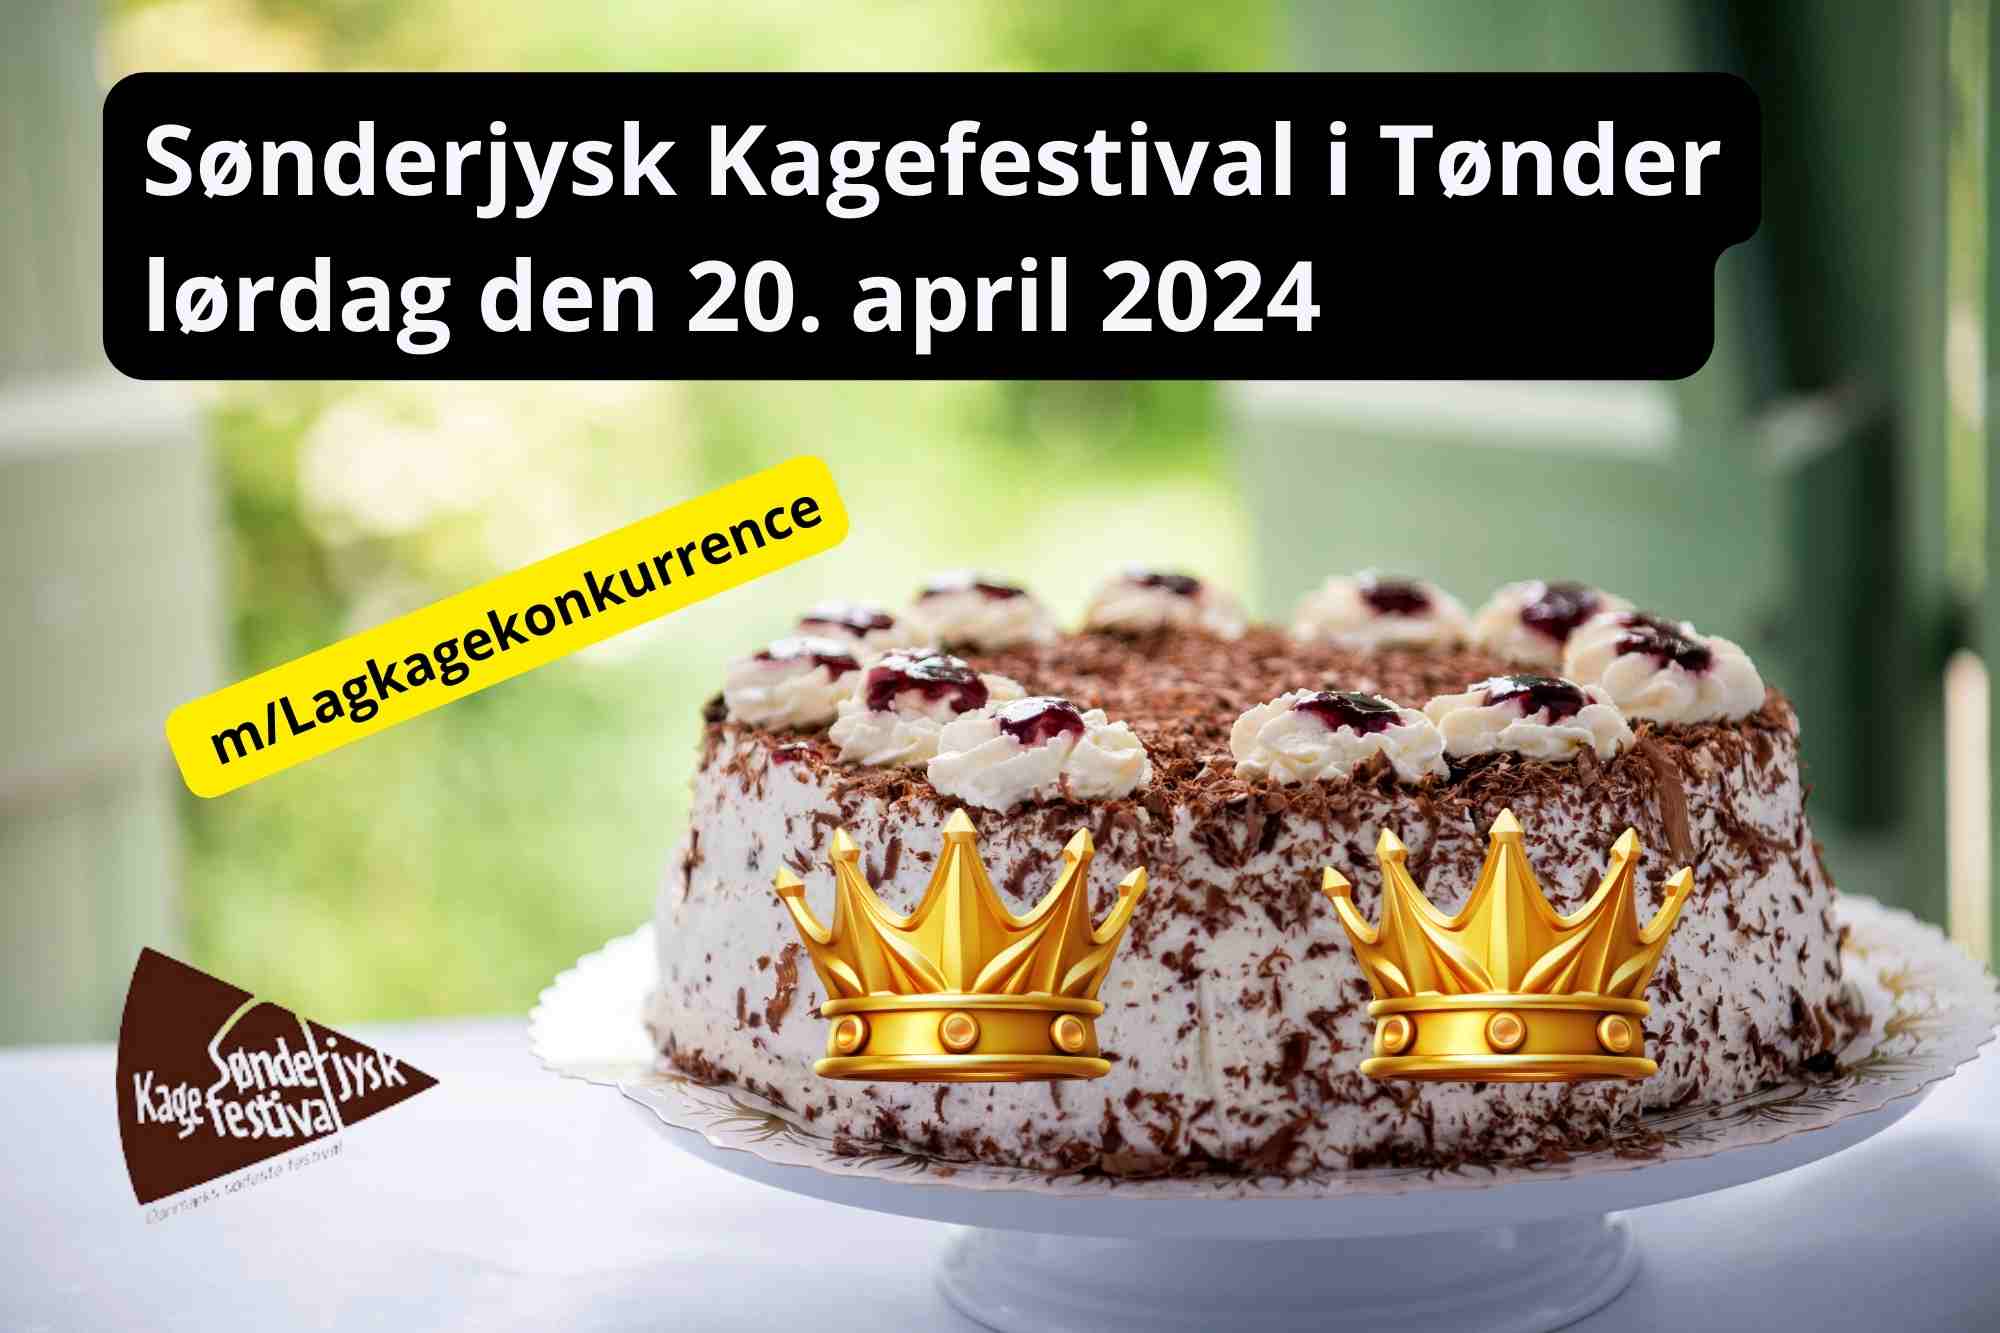 Oplev Sønderjysk Kagefestival 2024 i Tønder – Det sker lørdag den 20. april